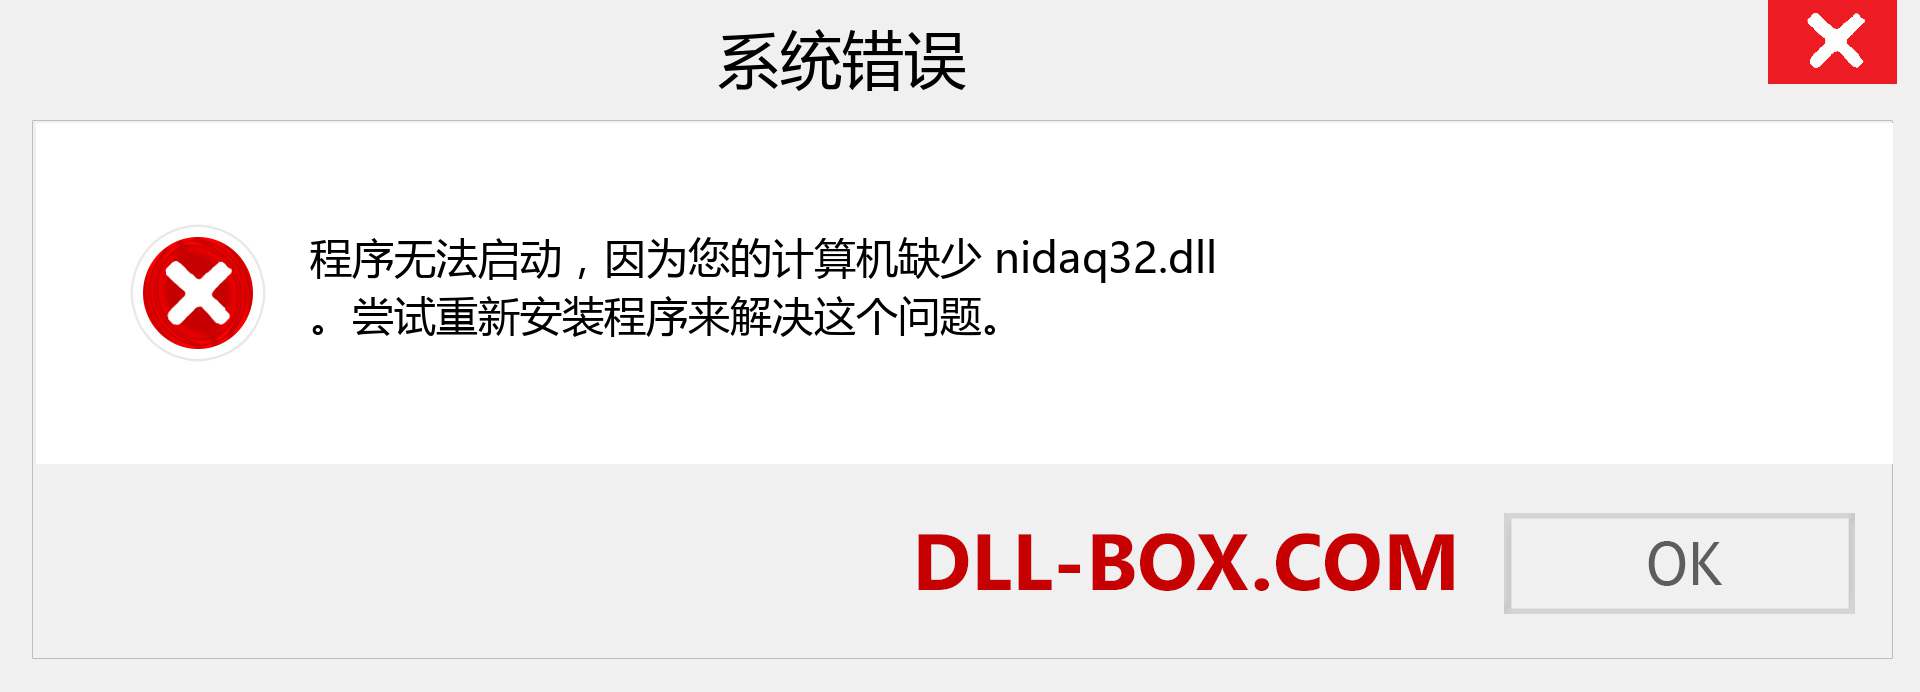 nidaq32.dll 文件丢失？。 适用于 Windows 7、8、10 的下载 - 修复 Windows、照片、图像上的 nidaq32 dll 丢失错误